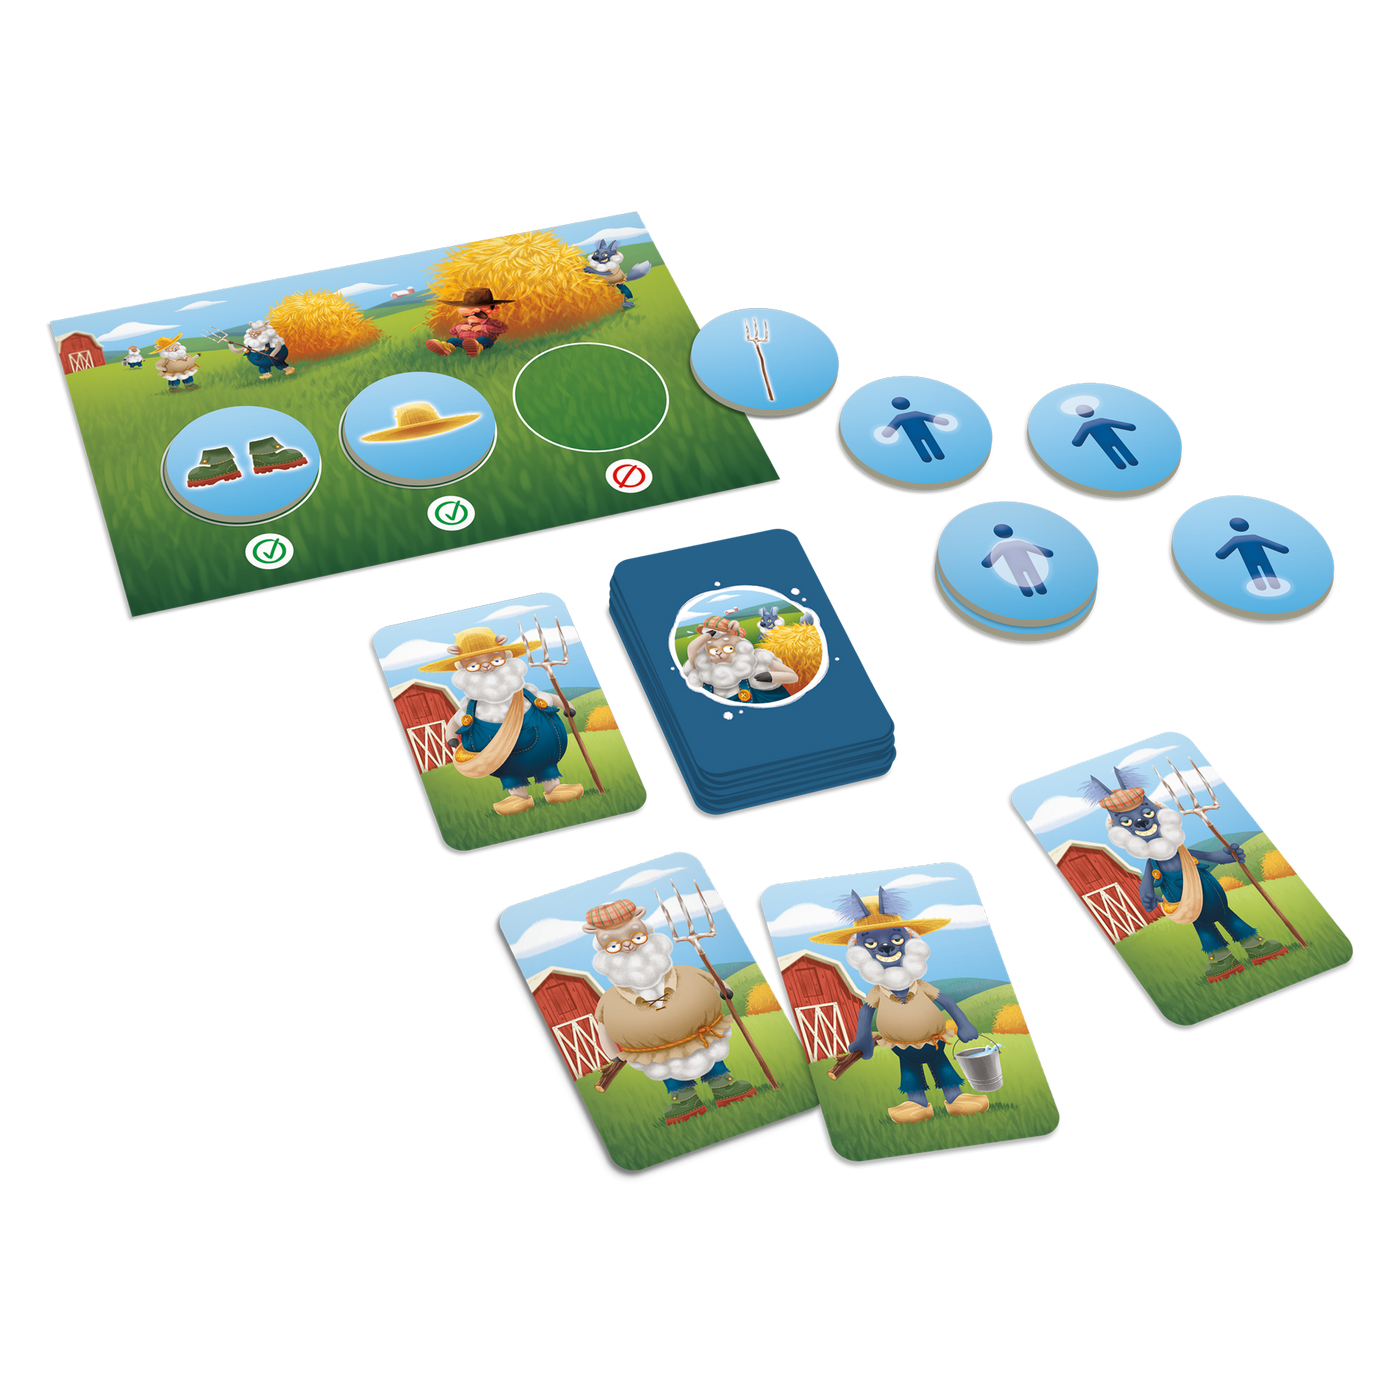 Attention aux loups - Composantes du jeu : planche-guide, cartes-personnages (loups et moutons) et jetons-objets